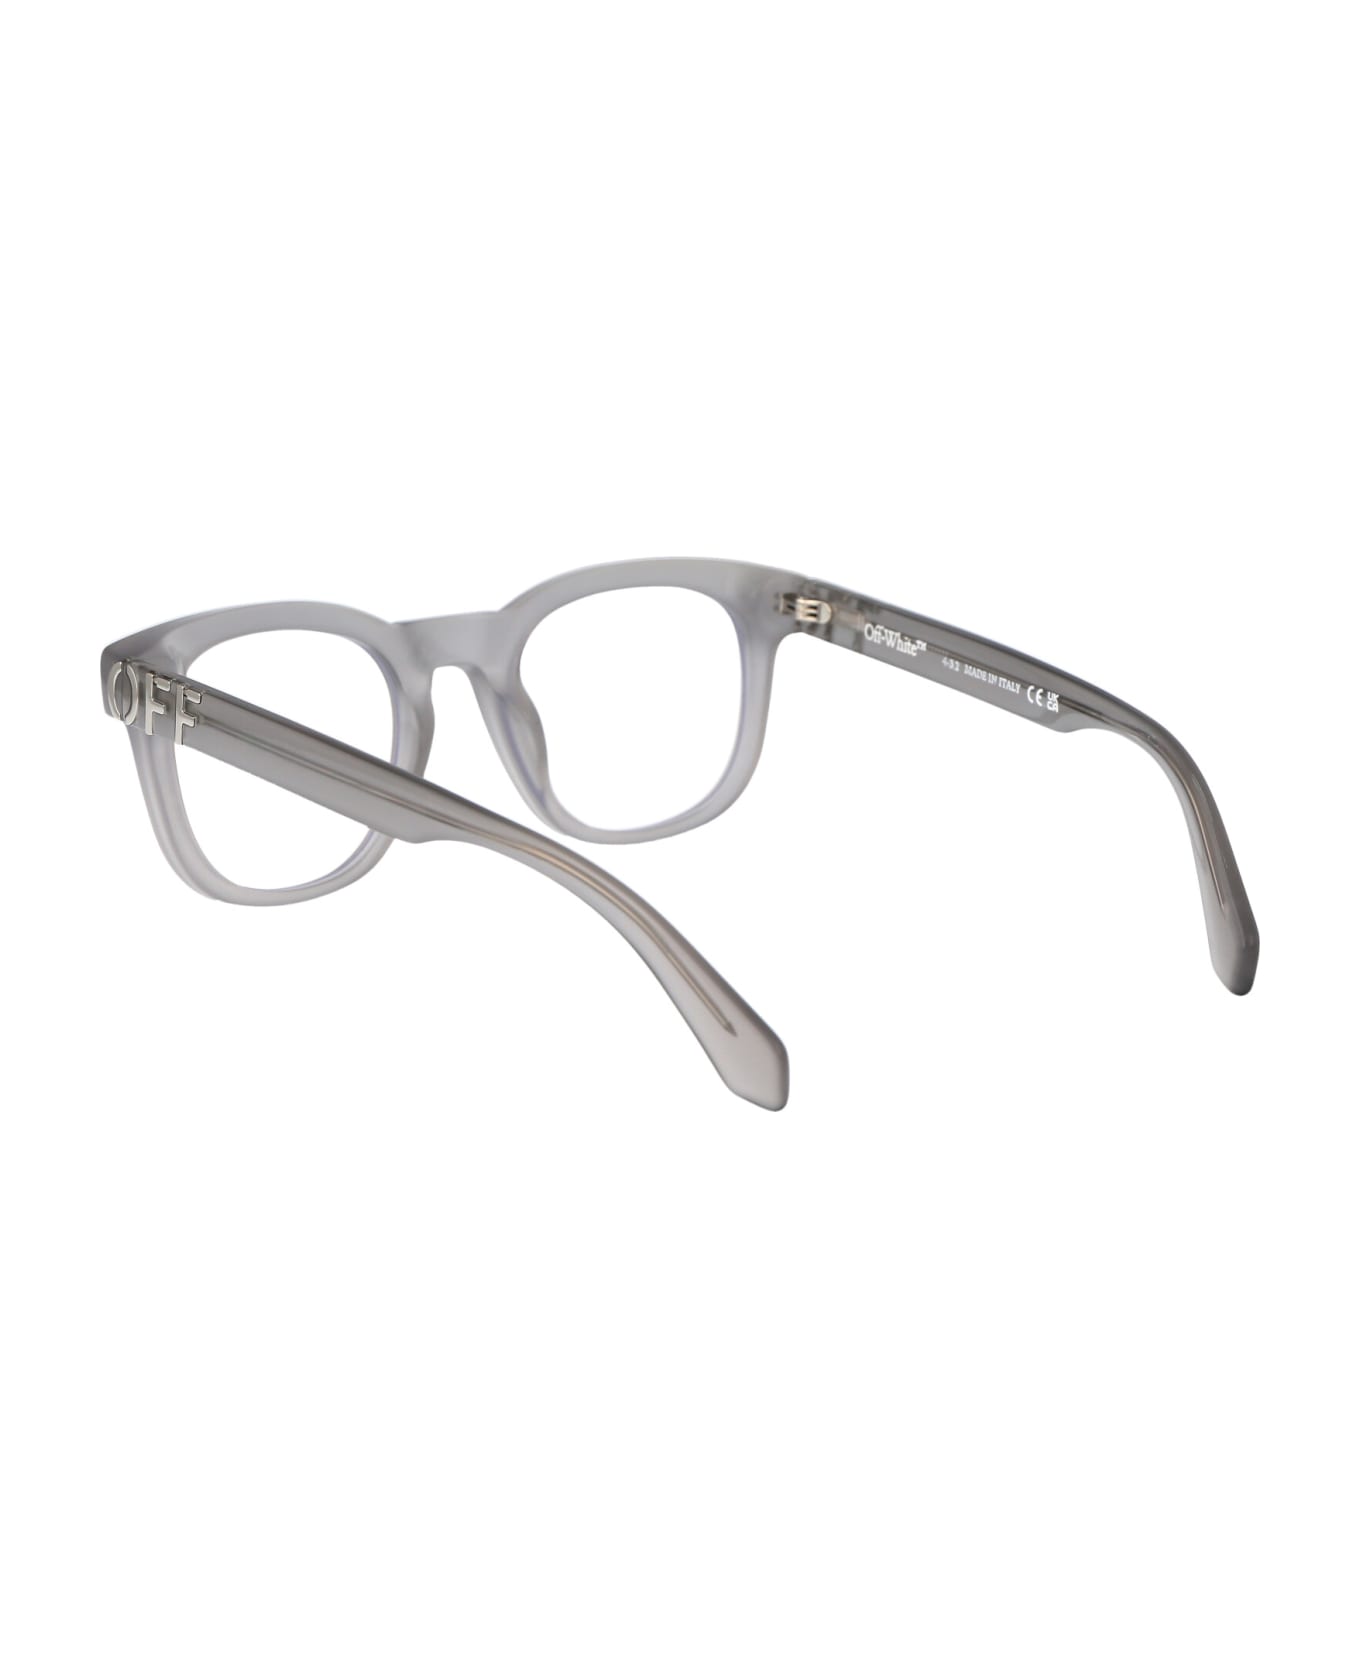 Off-White Optical Style 71 Glasses - 0900 GREY  アイウェア